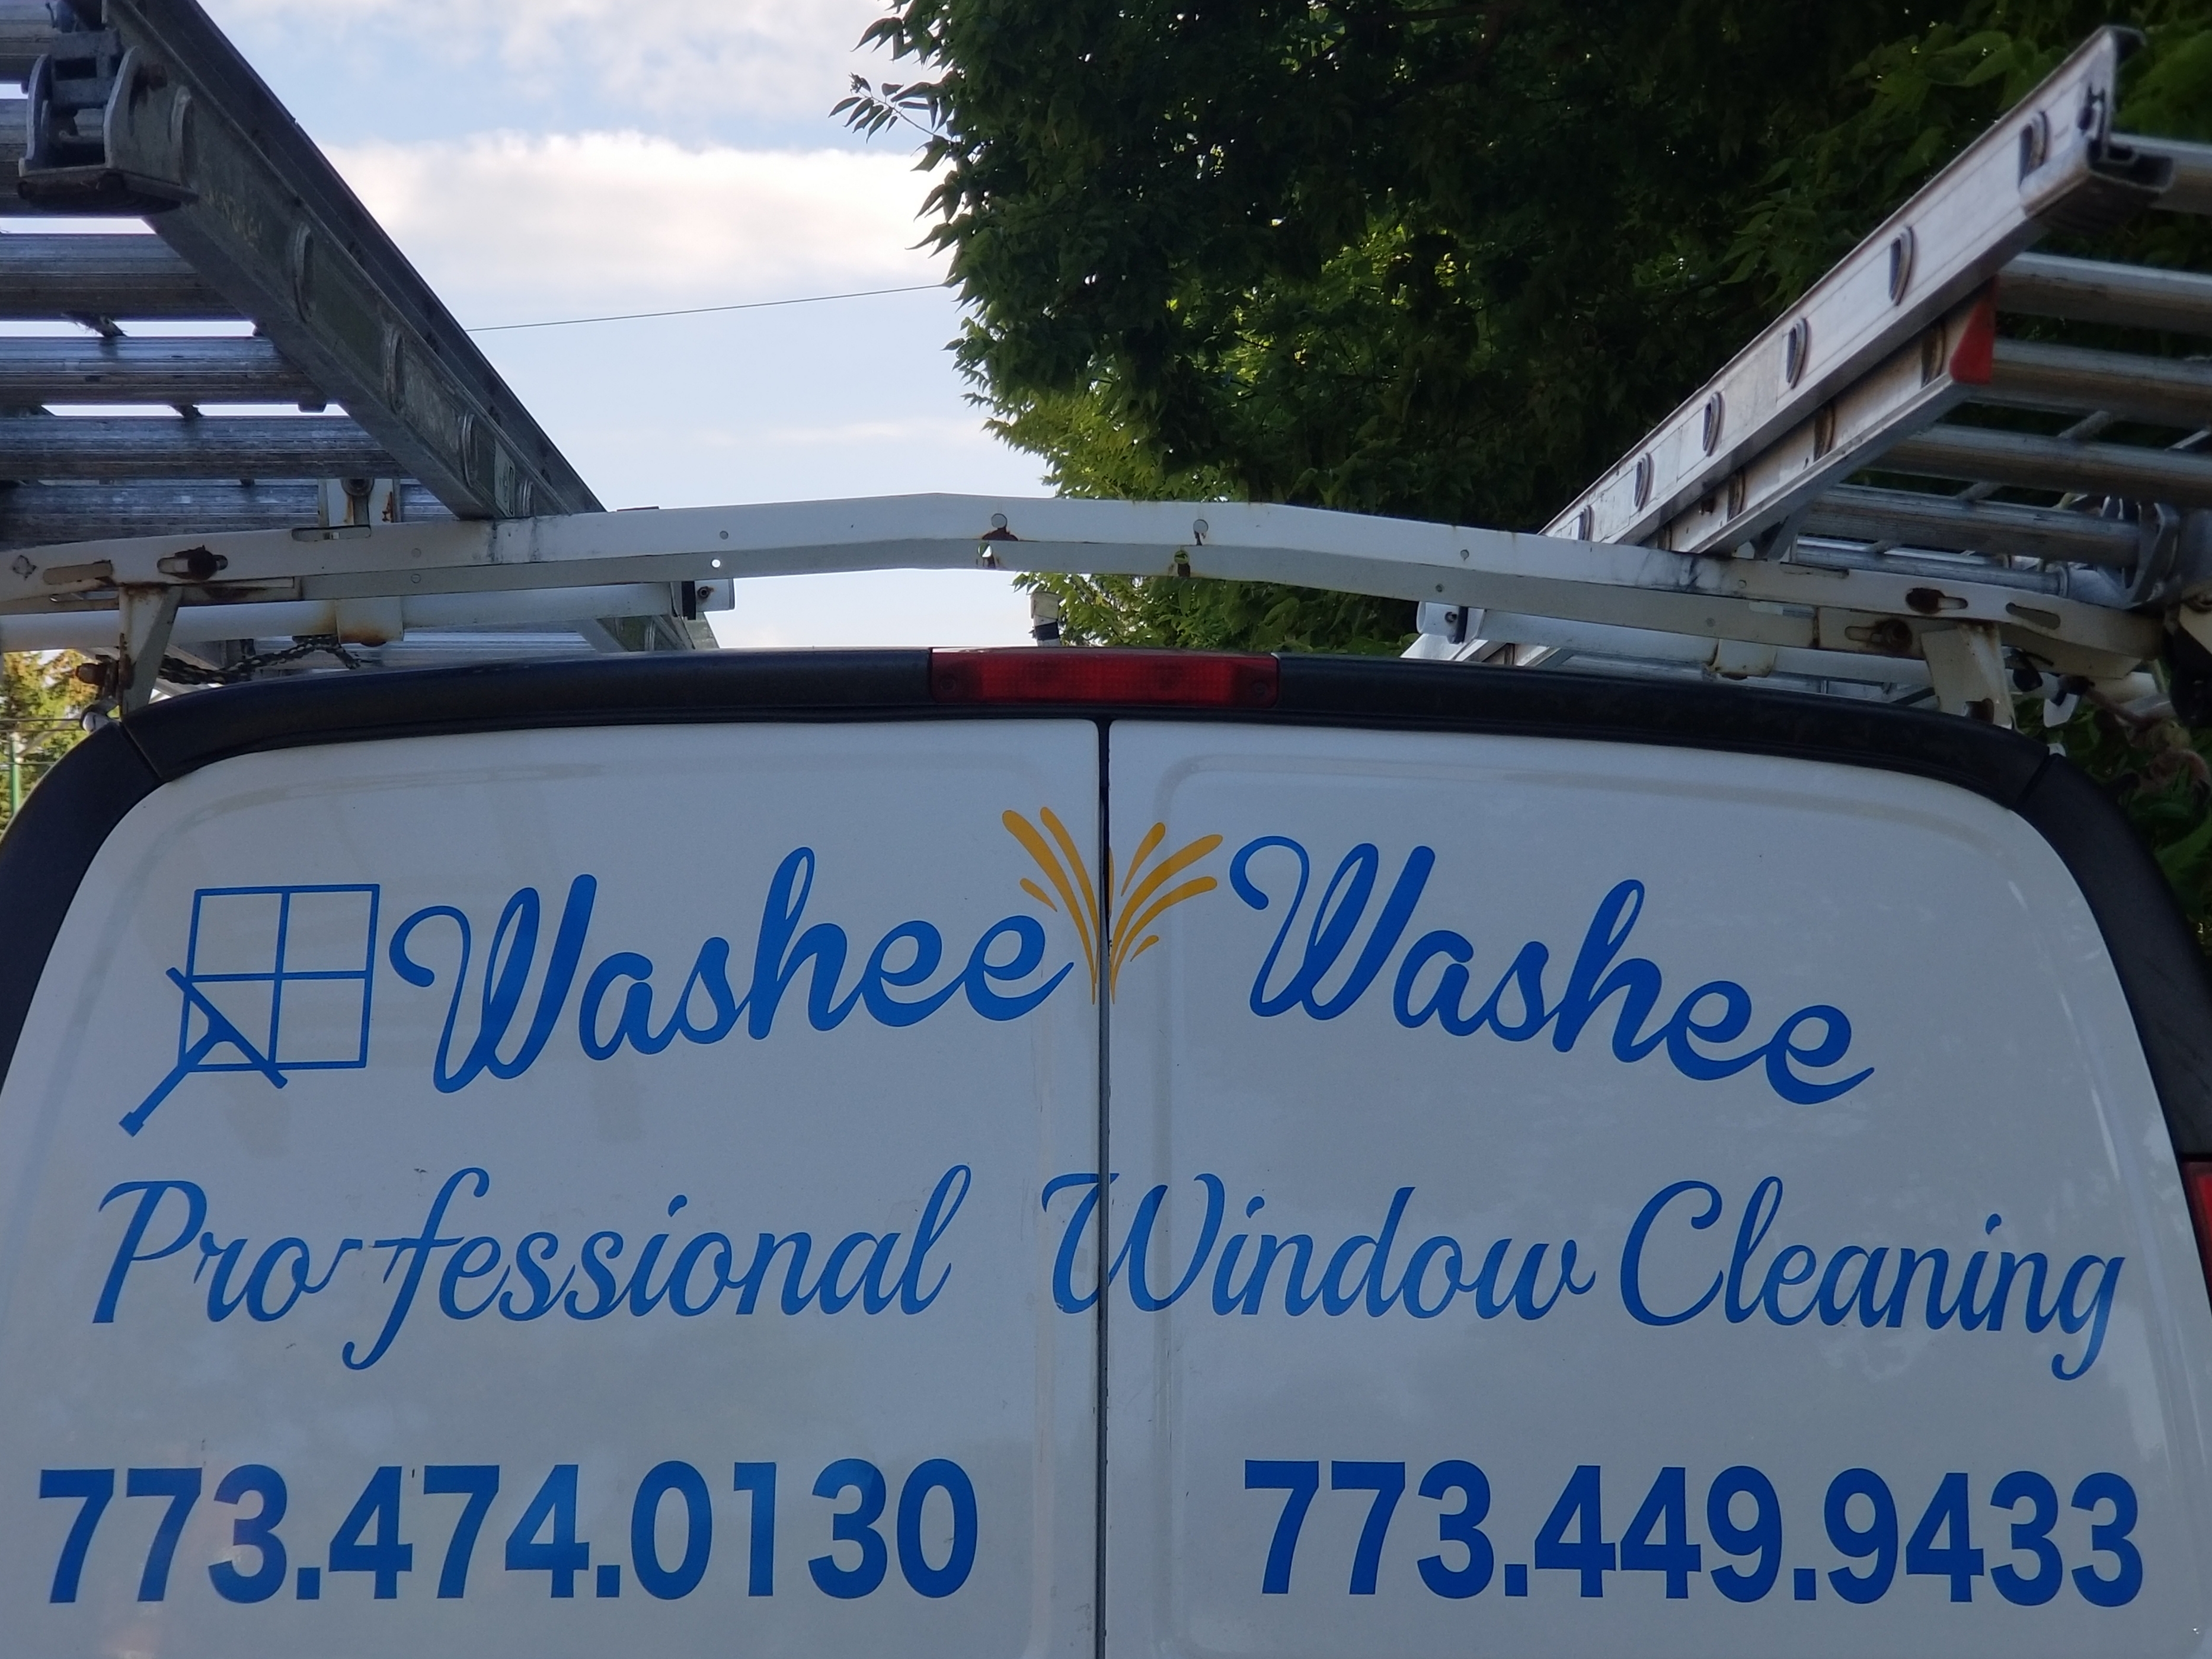 Washee Washee Professional Window Cleaning Logo